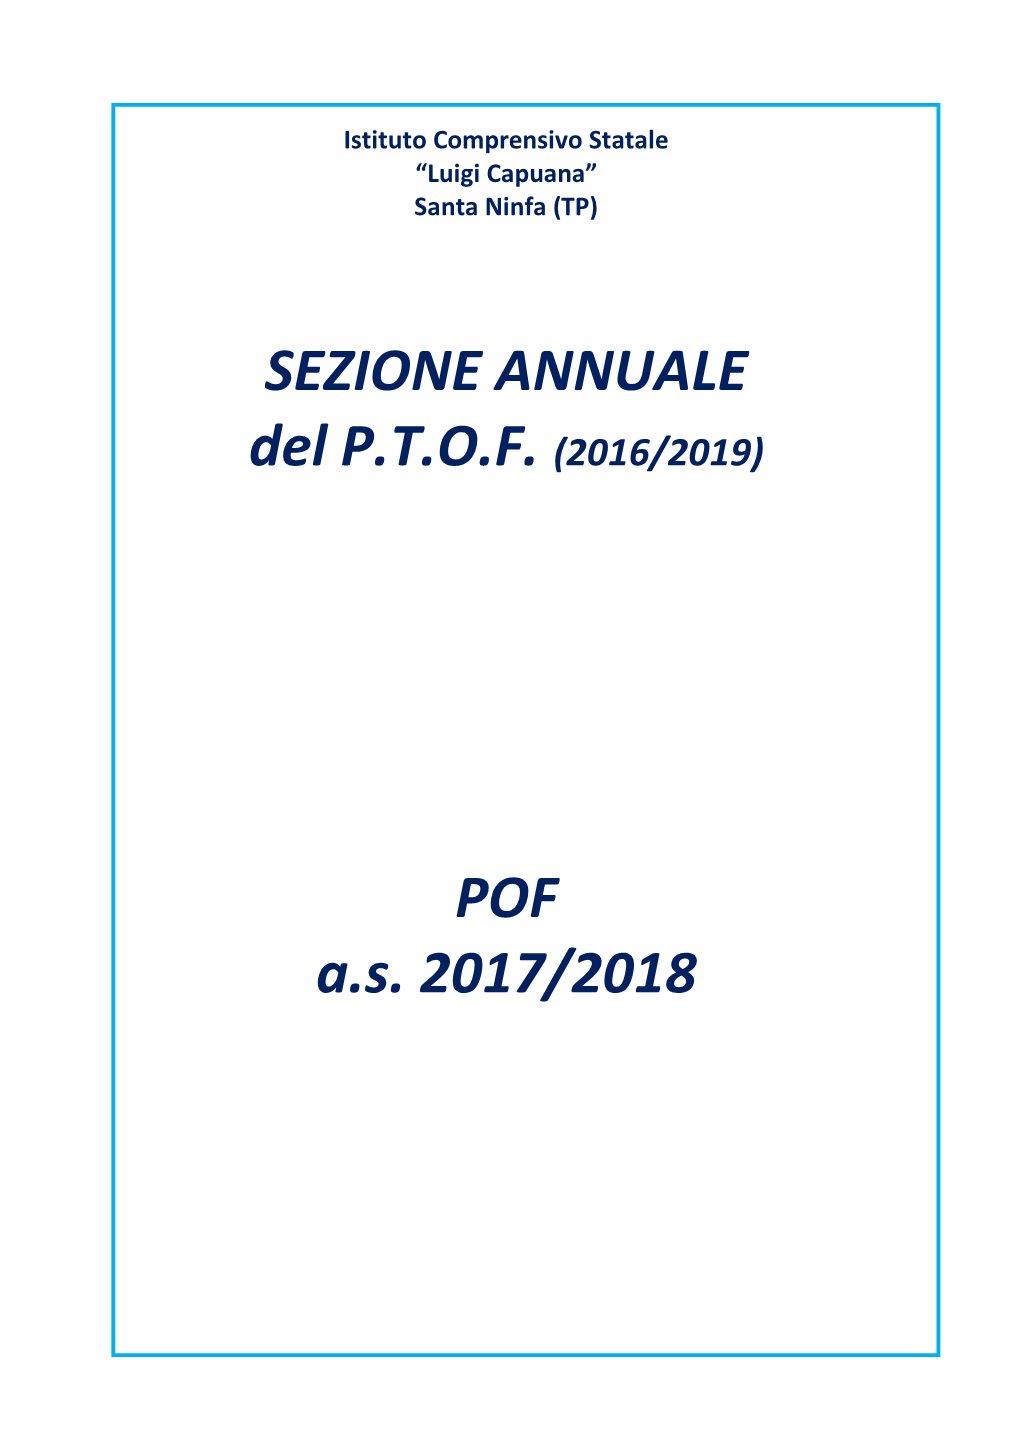 SEZIONE ANNUALE Del P.T.O.F. (2016/2019) POF A.S. 2017/2018